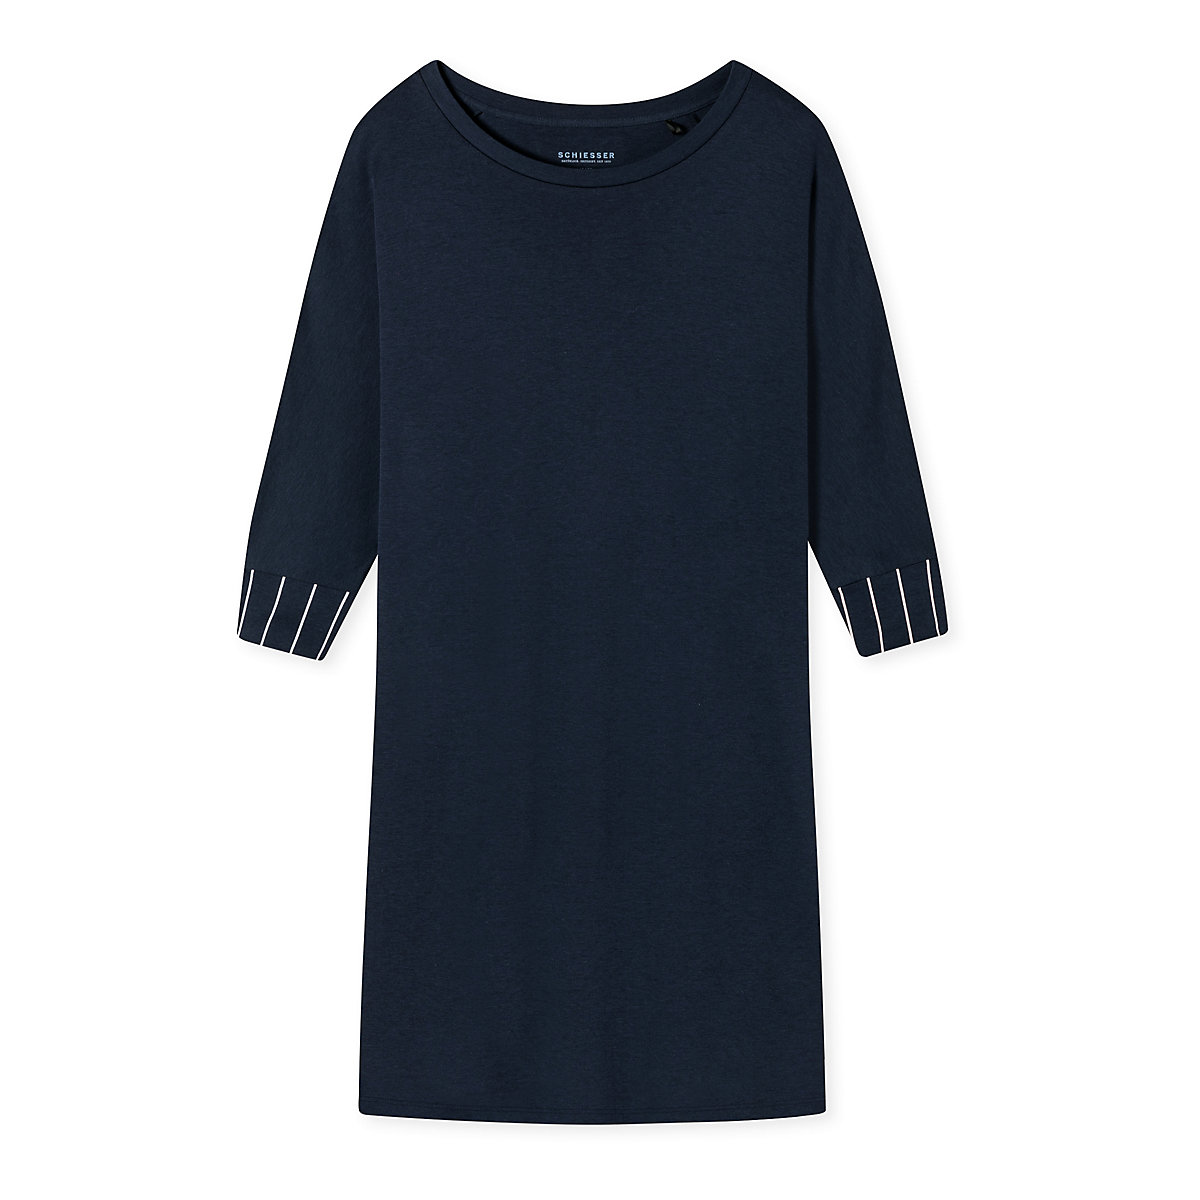 SCHIESSER Sleepshirt Modern Nightwear Nachthemden dunkelblau